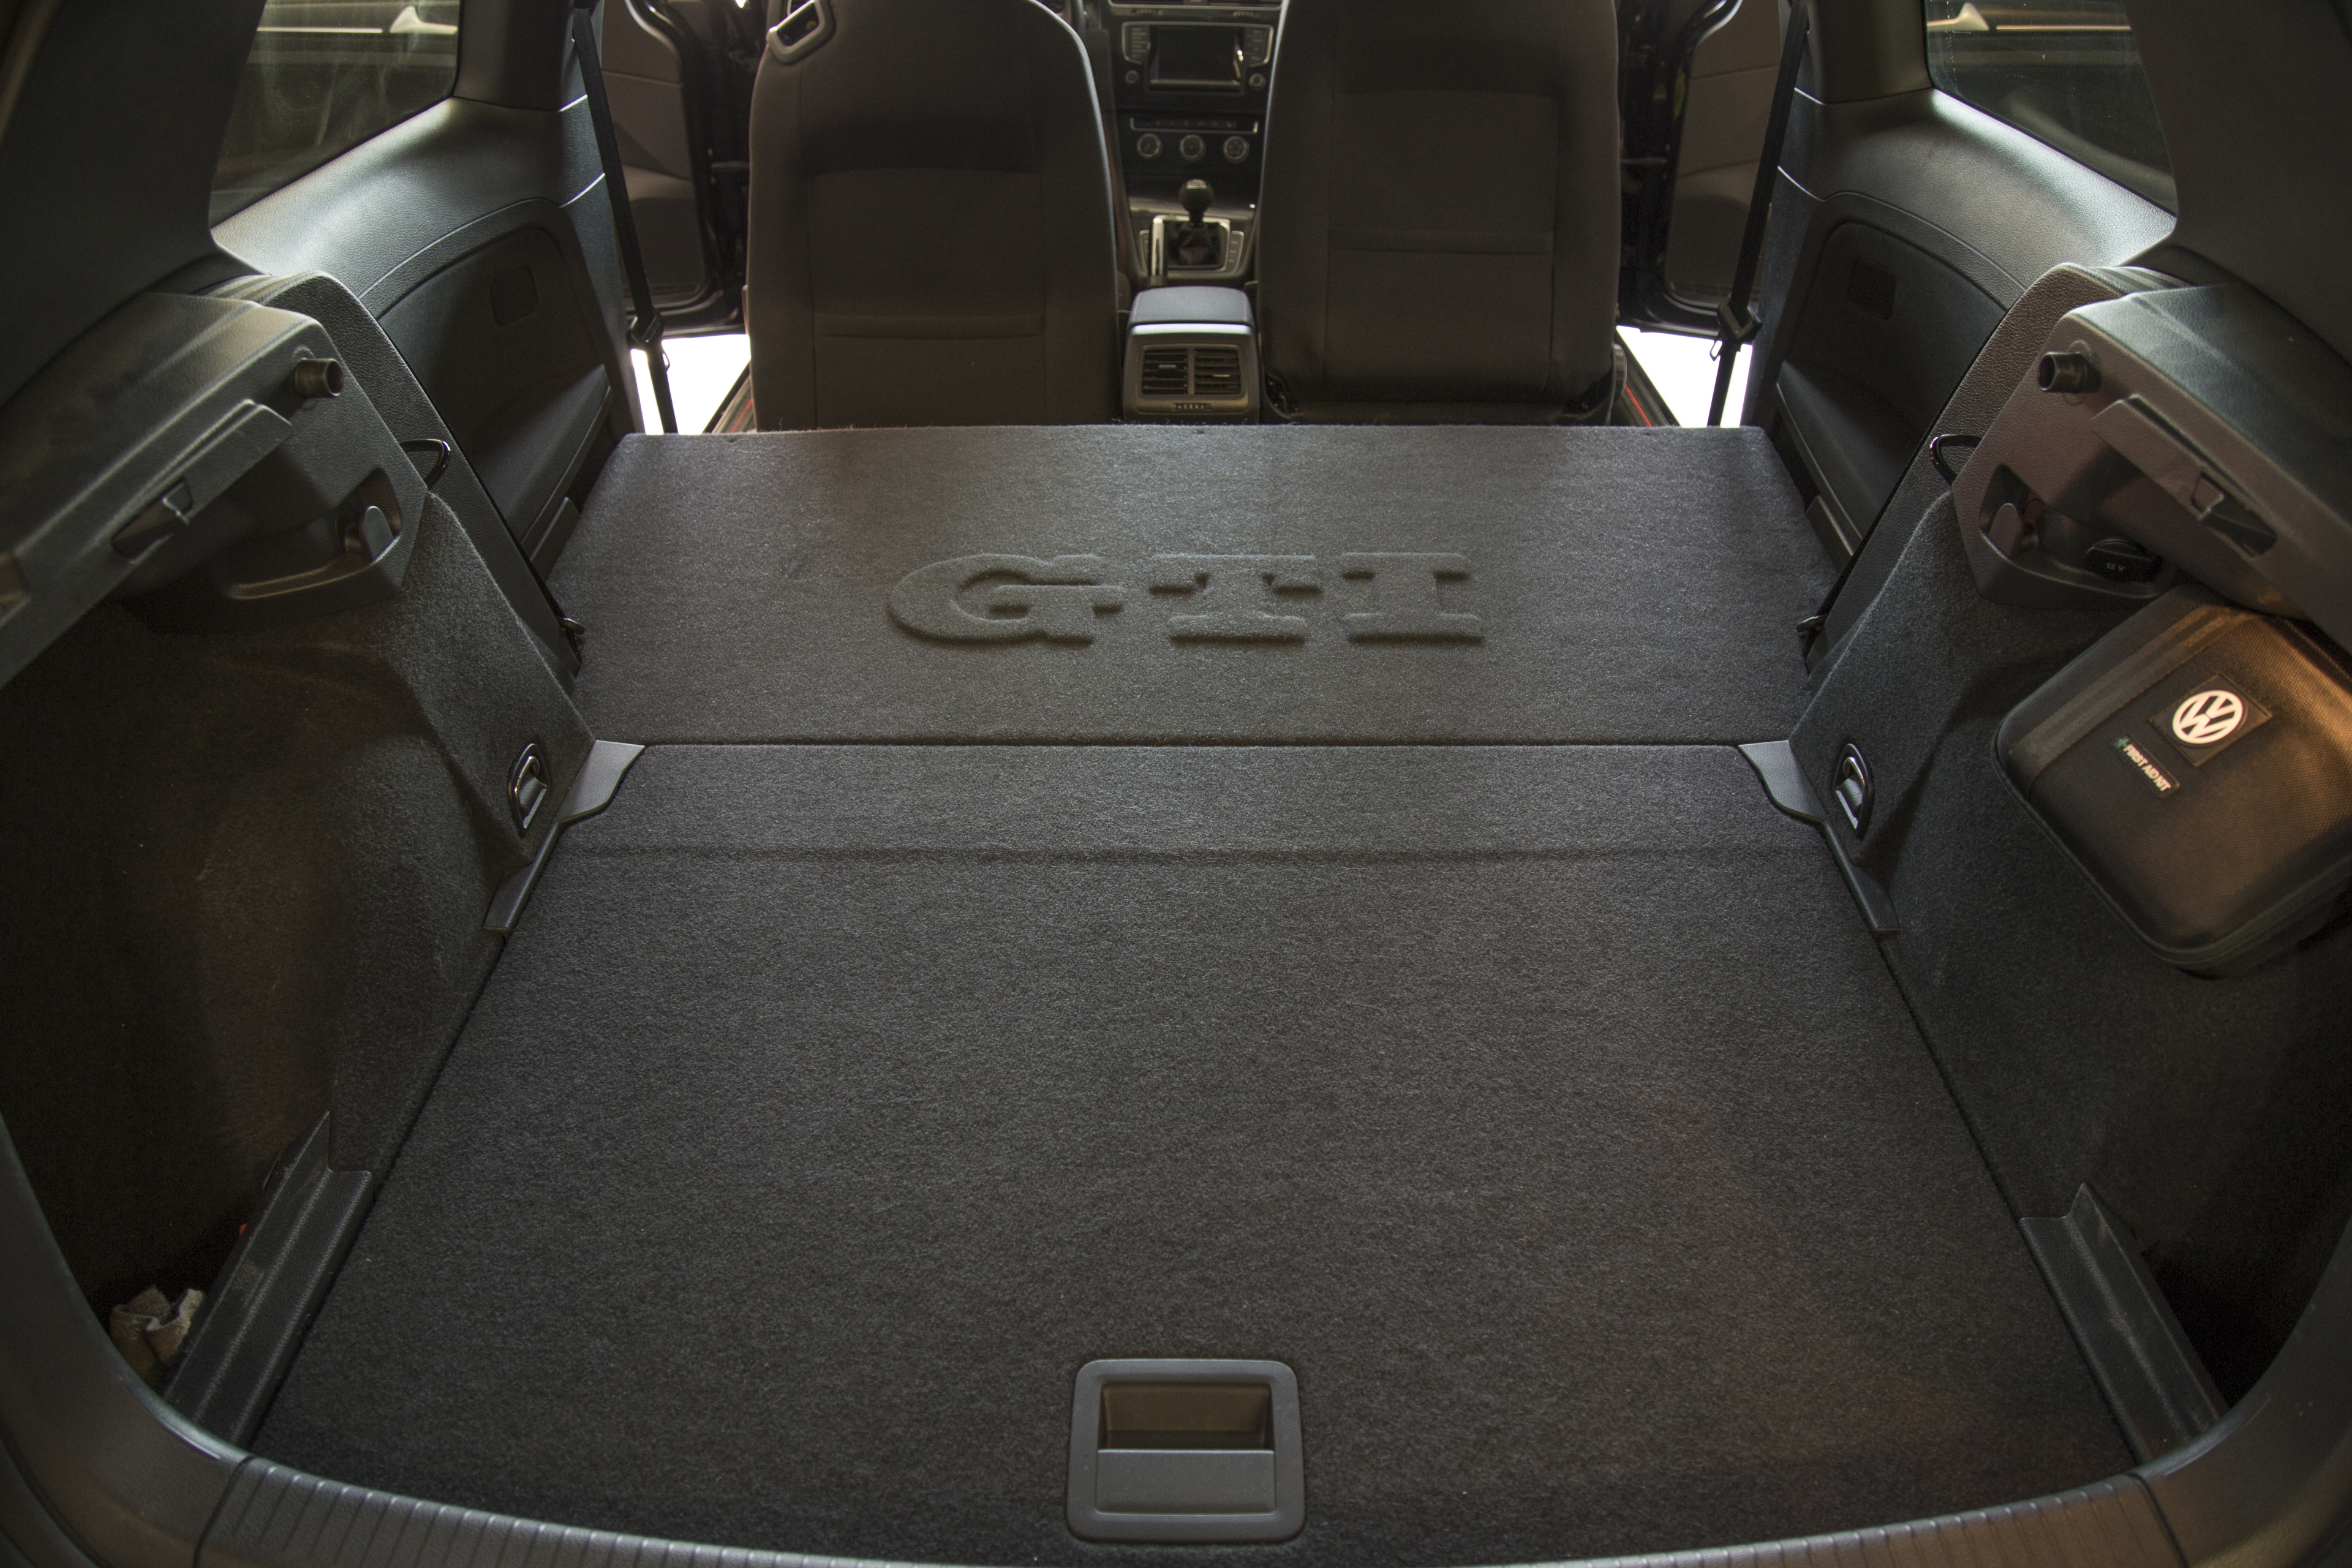 Rear seat delete kit for VW Golf 7R Variant